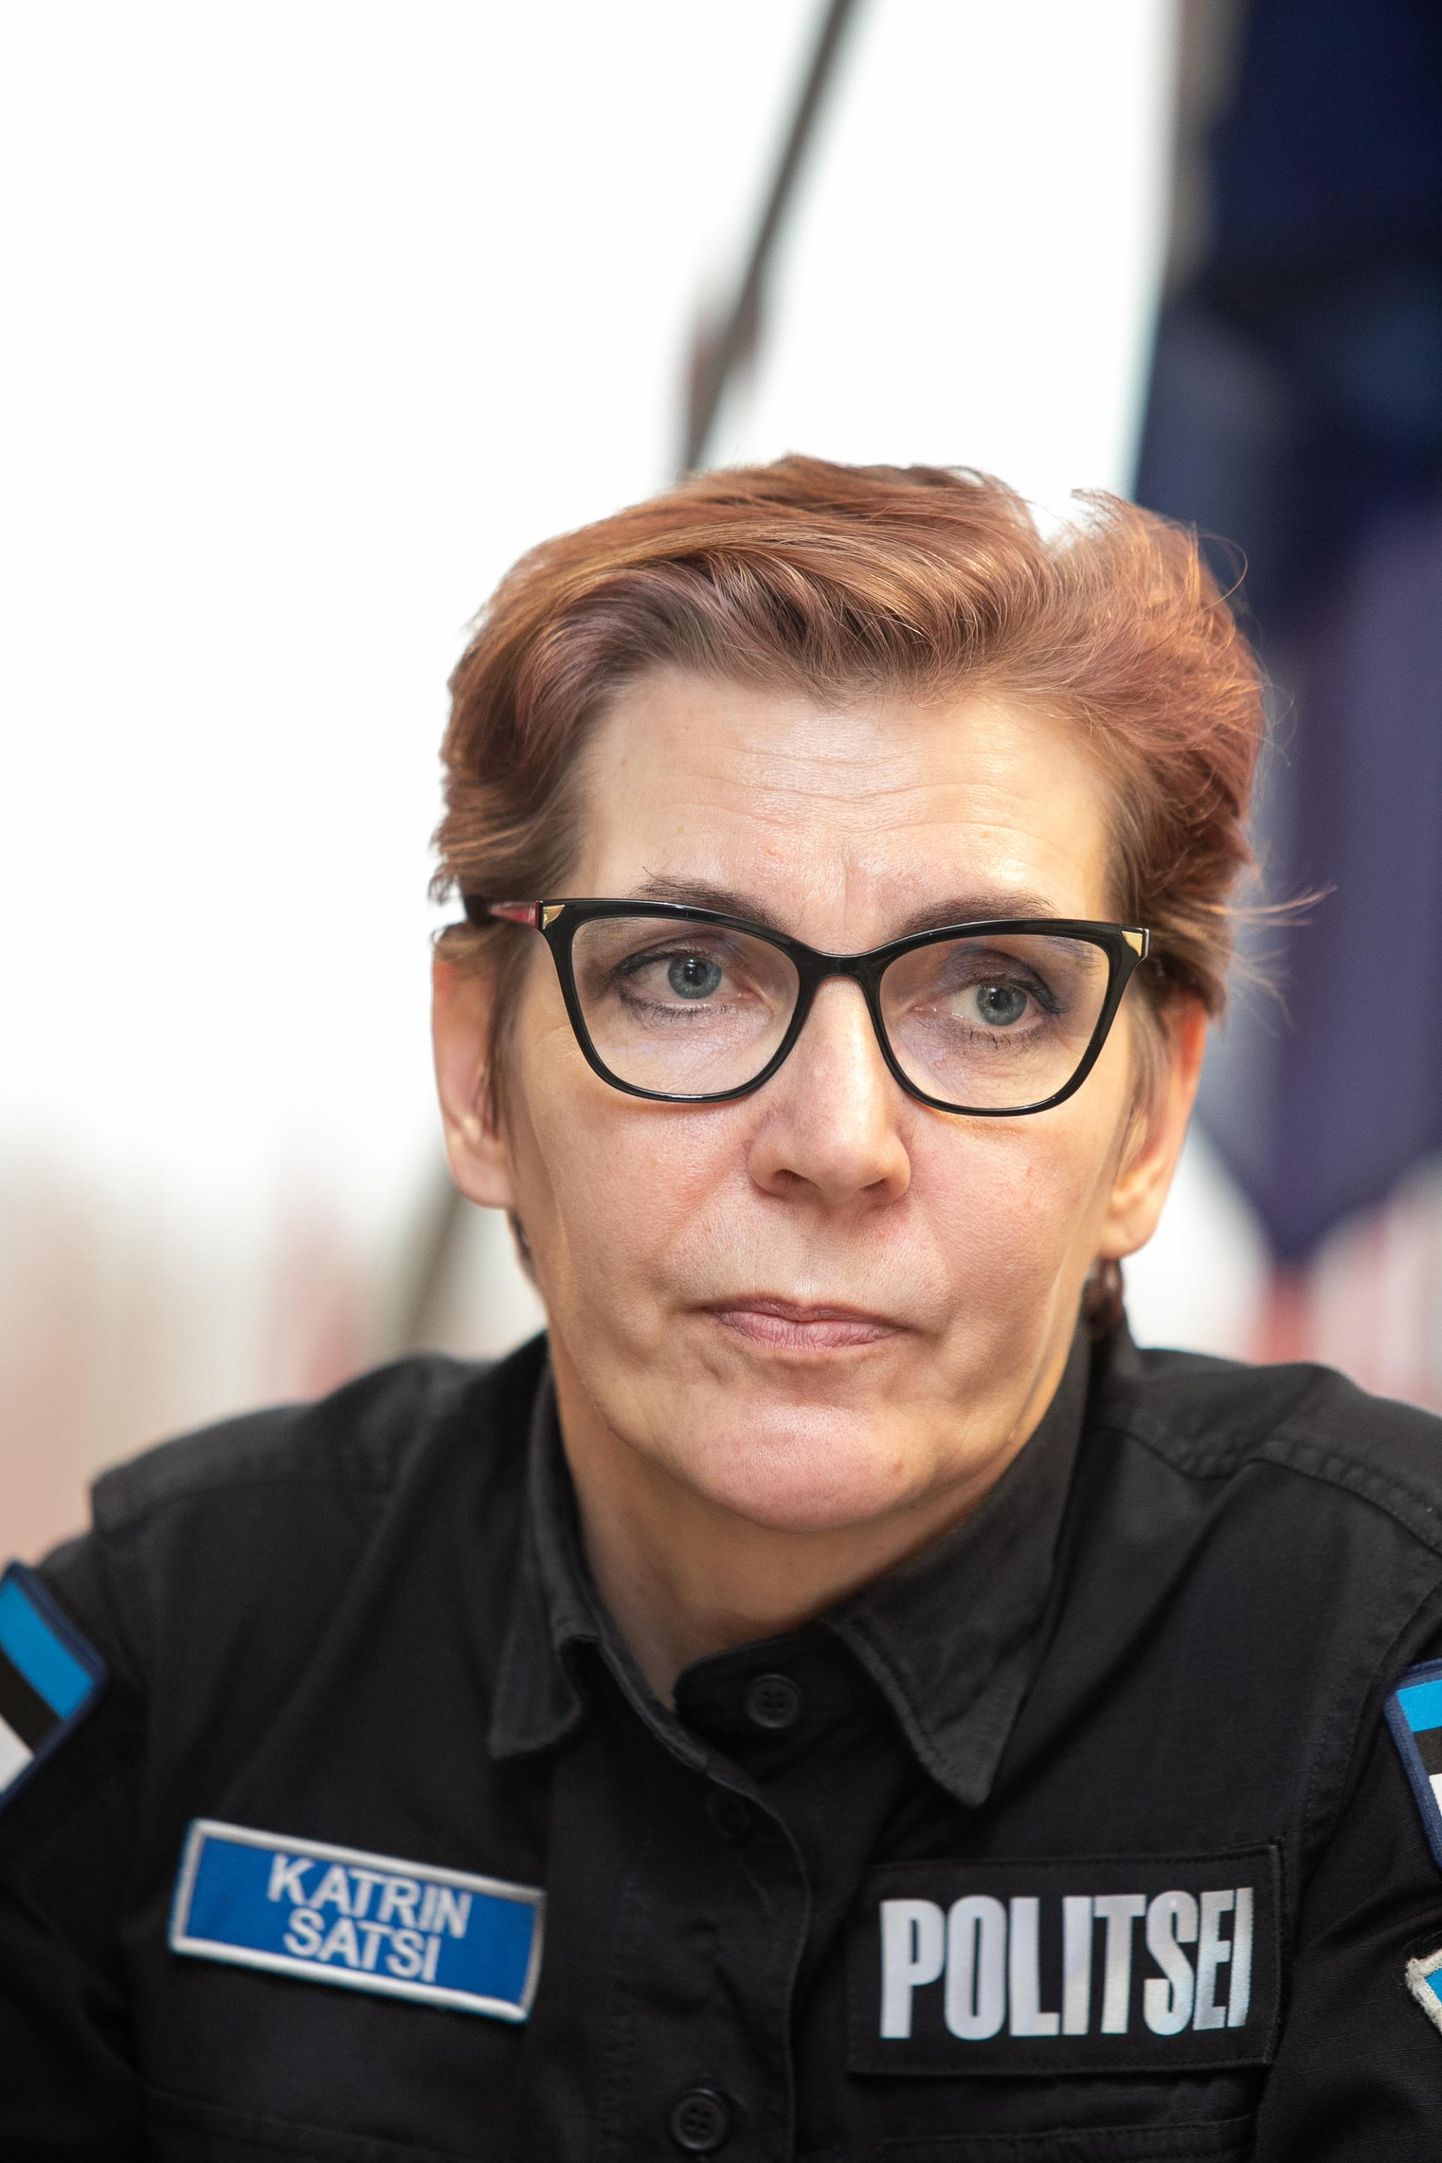 Rakvere politseijaoskonna juhataja Katrin Satsi.